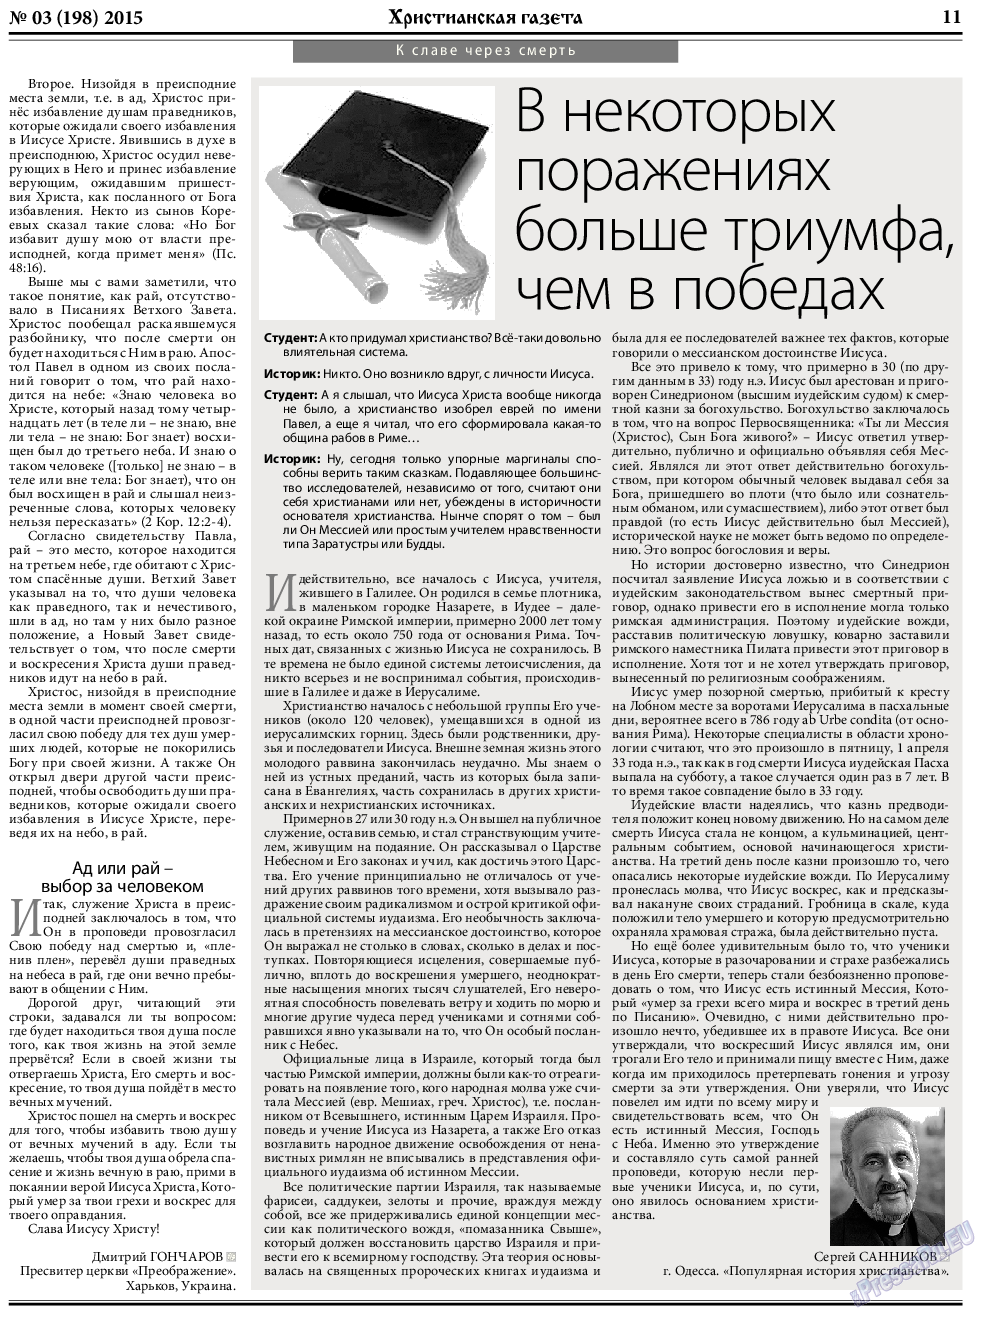 Христианская газета, газета. 2015 №3 стр.11